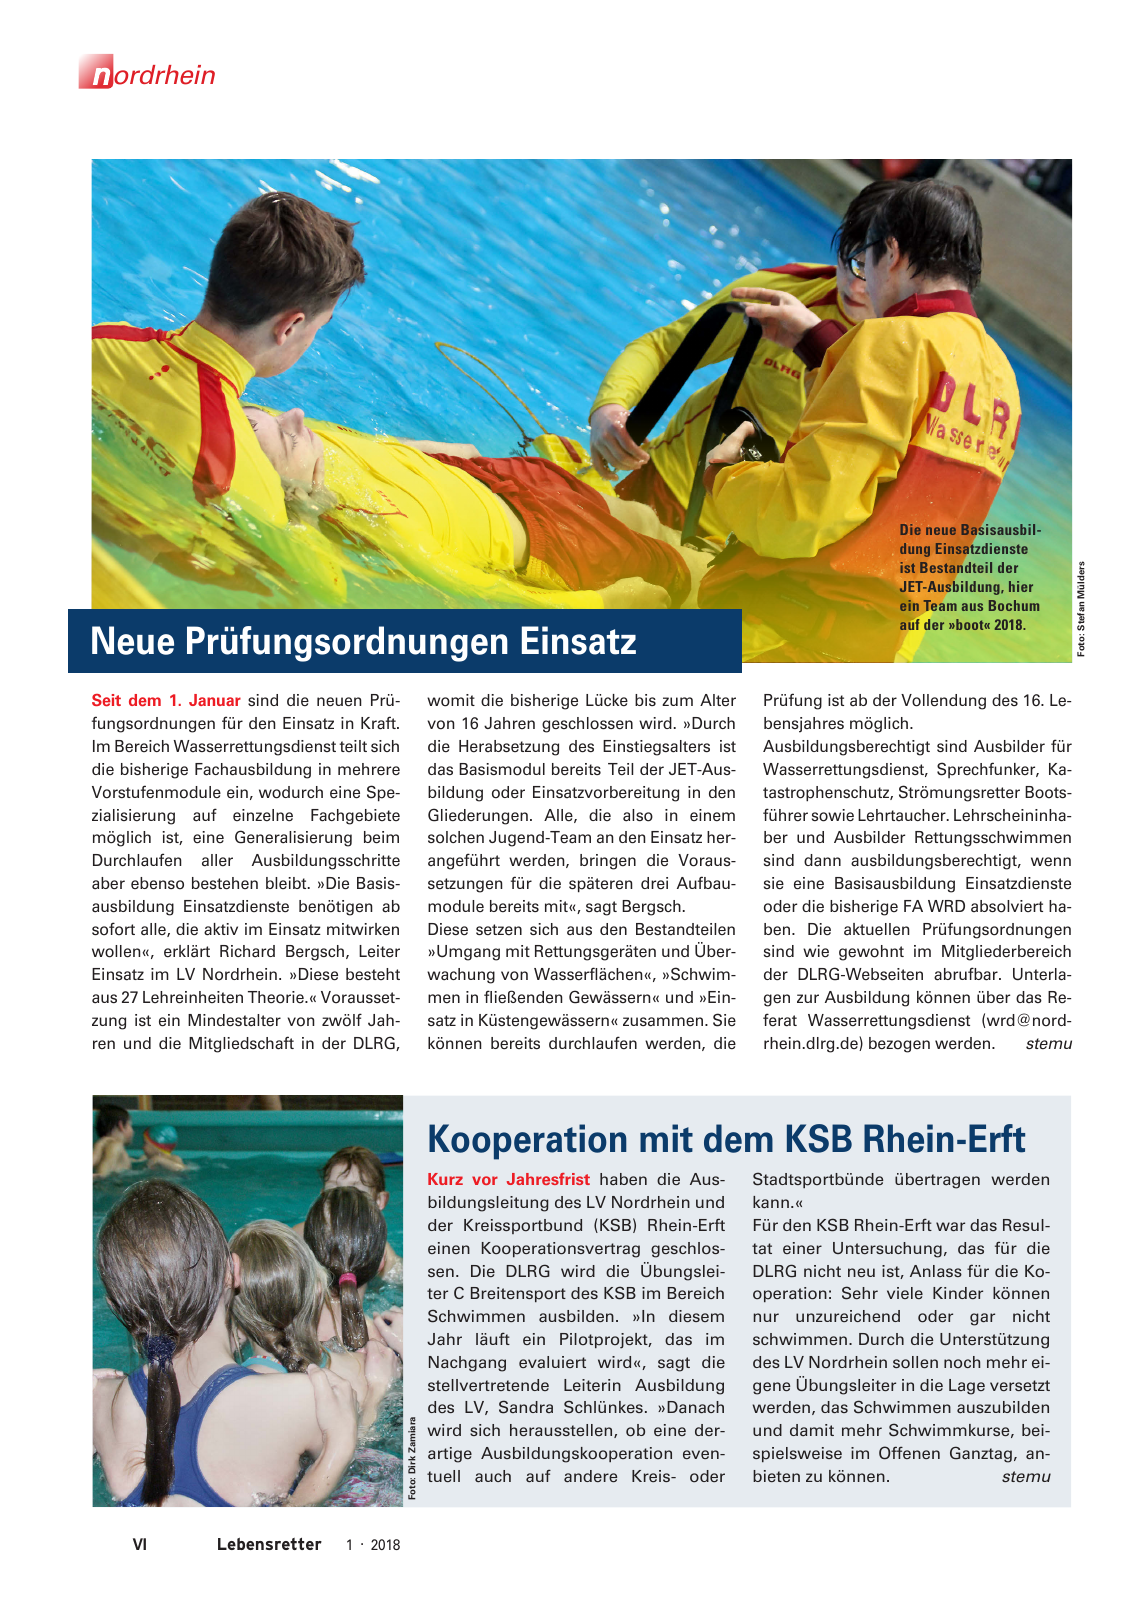 Vorschau Lebensretter 1/2018 - Regionalausgabe Nordrhein Seite 8